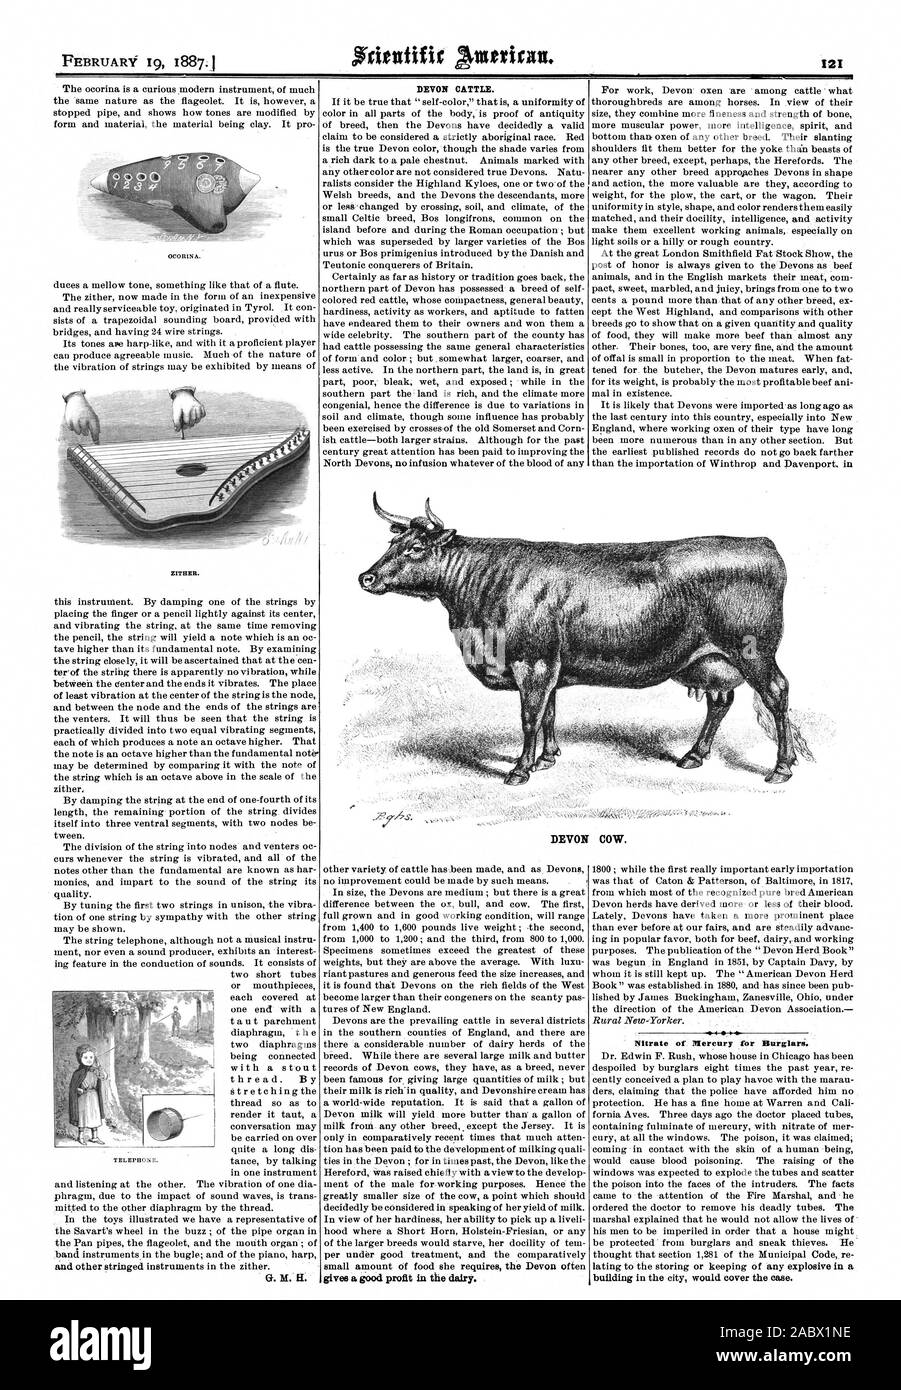 ZITHER. G. H.H.DEVON VIEH. Nitrat Quecksilber für Burglari. DEVON KUH., Scientific American, 1887-02-19 Stockfoto